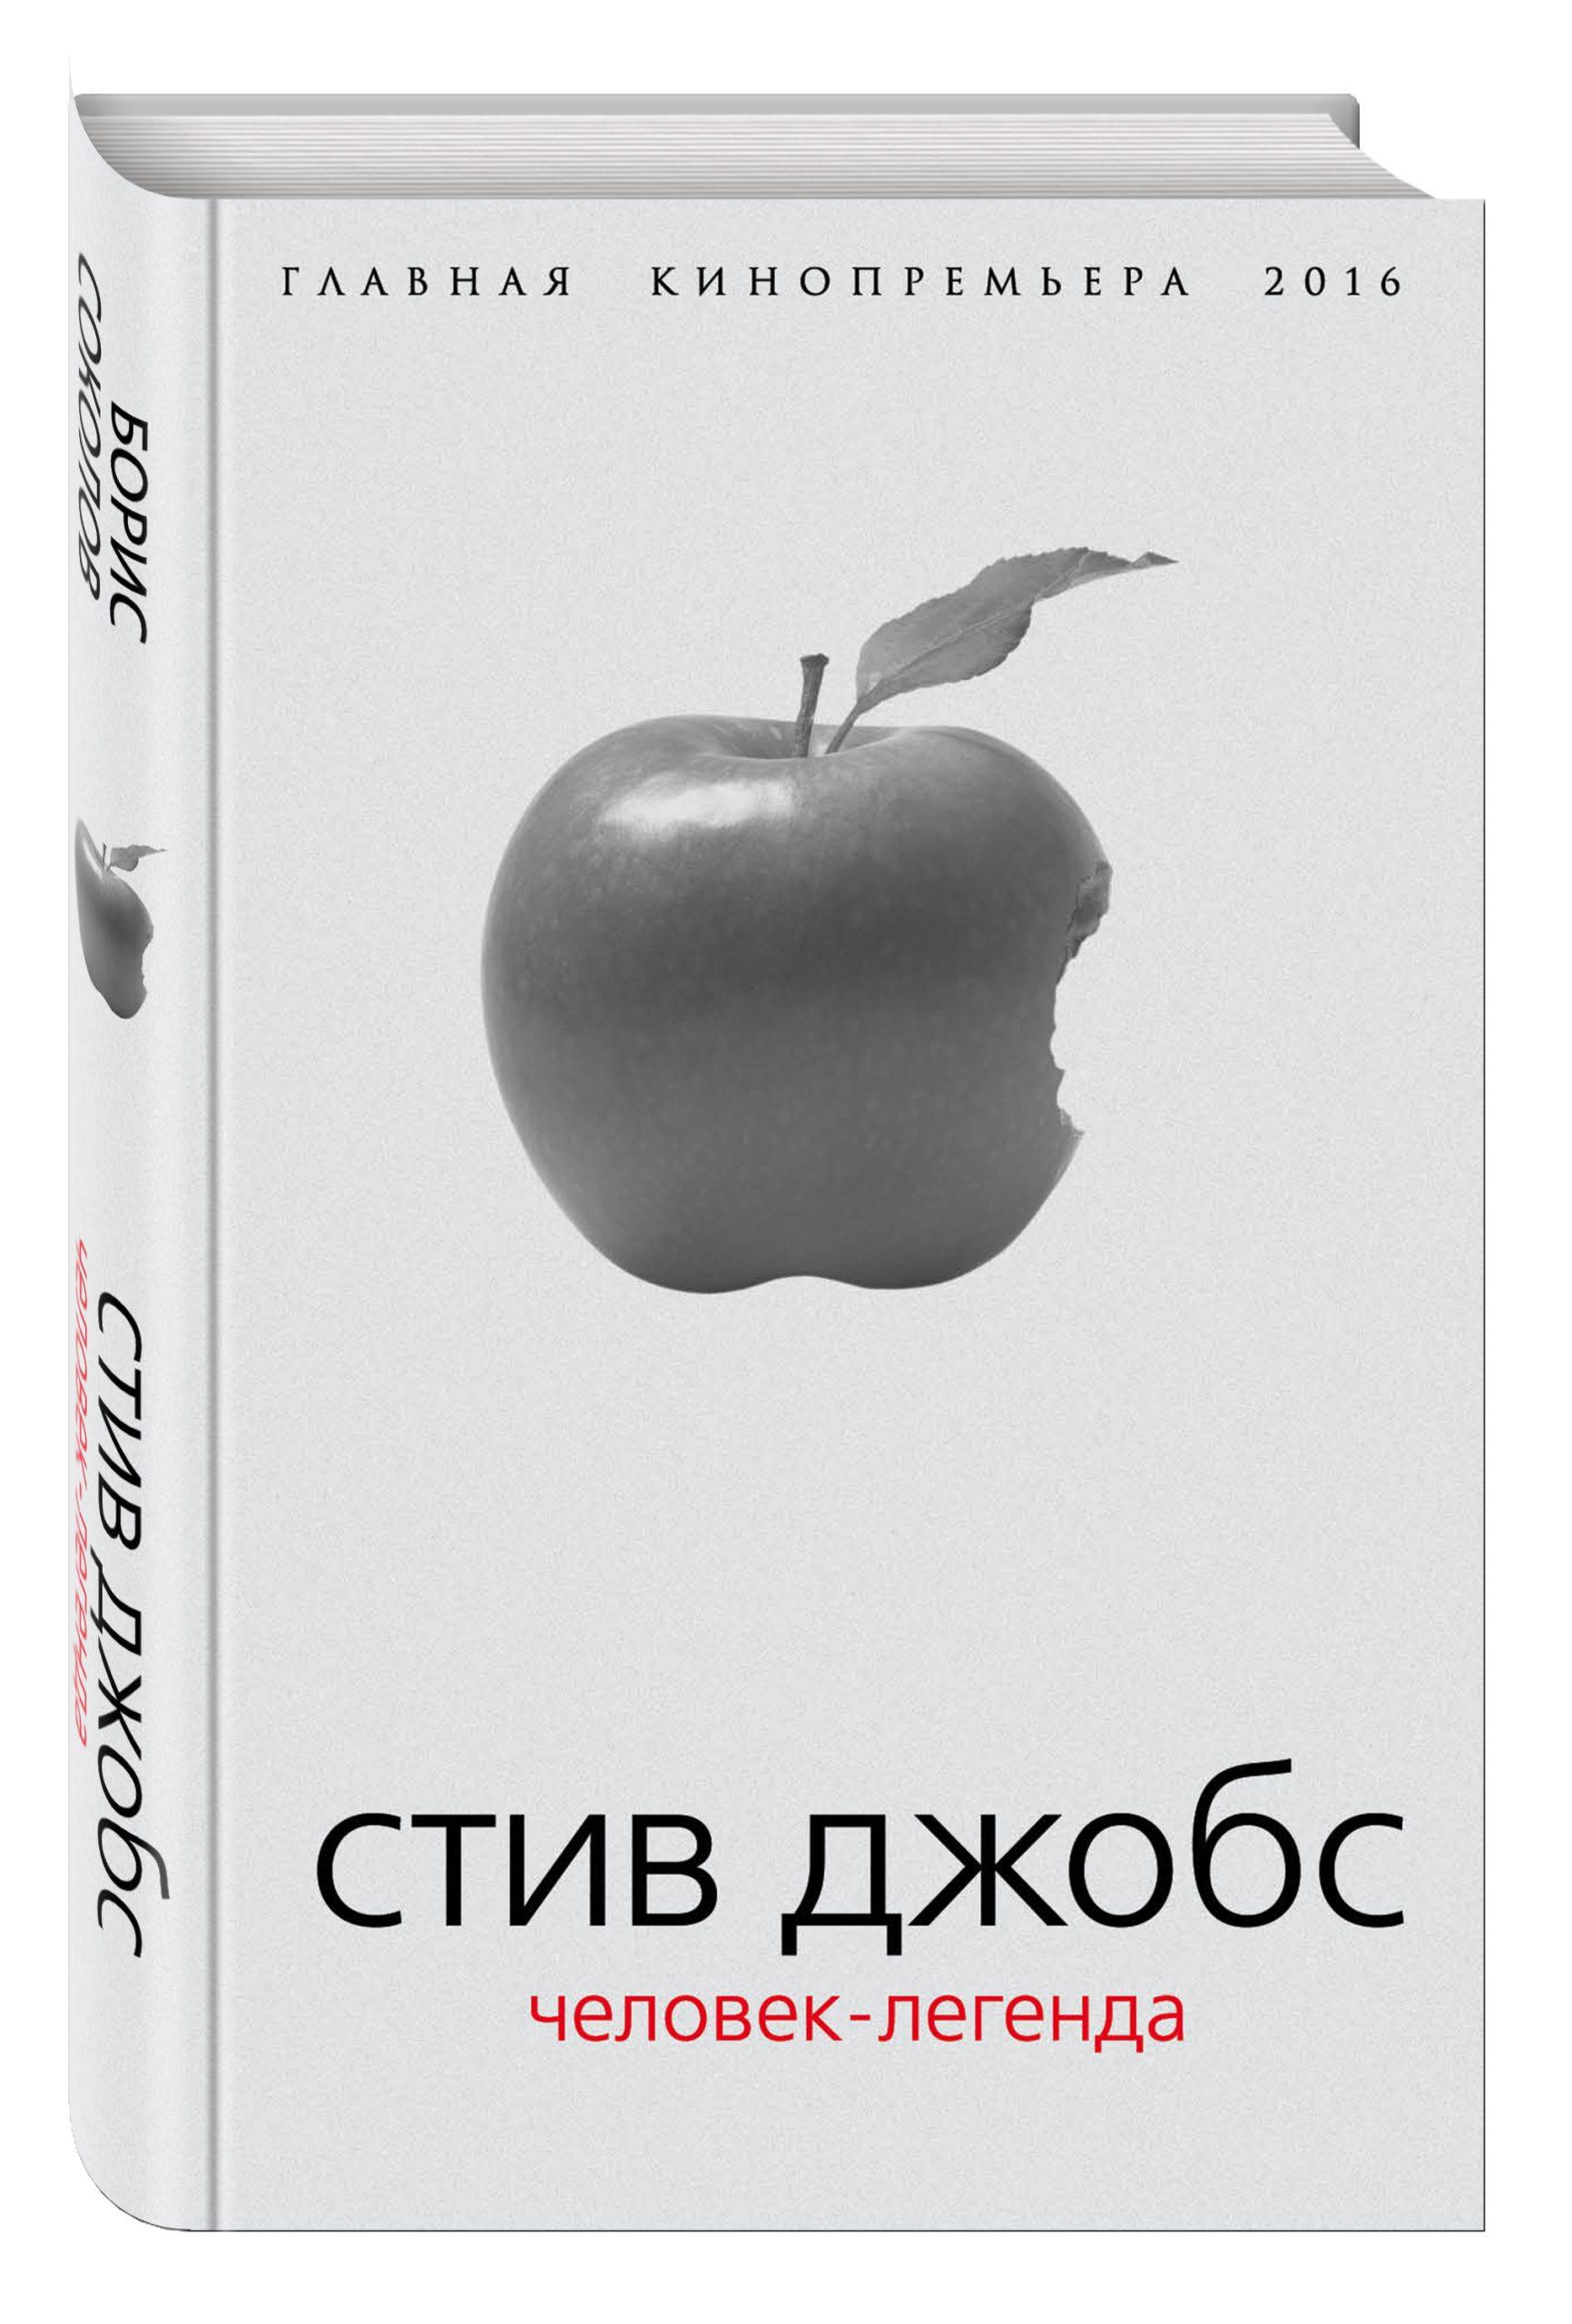 Steve Jobs - The Apple Man